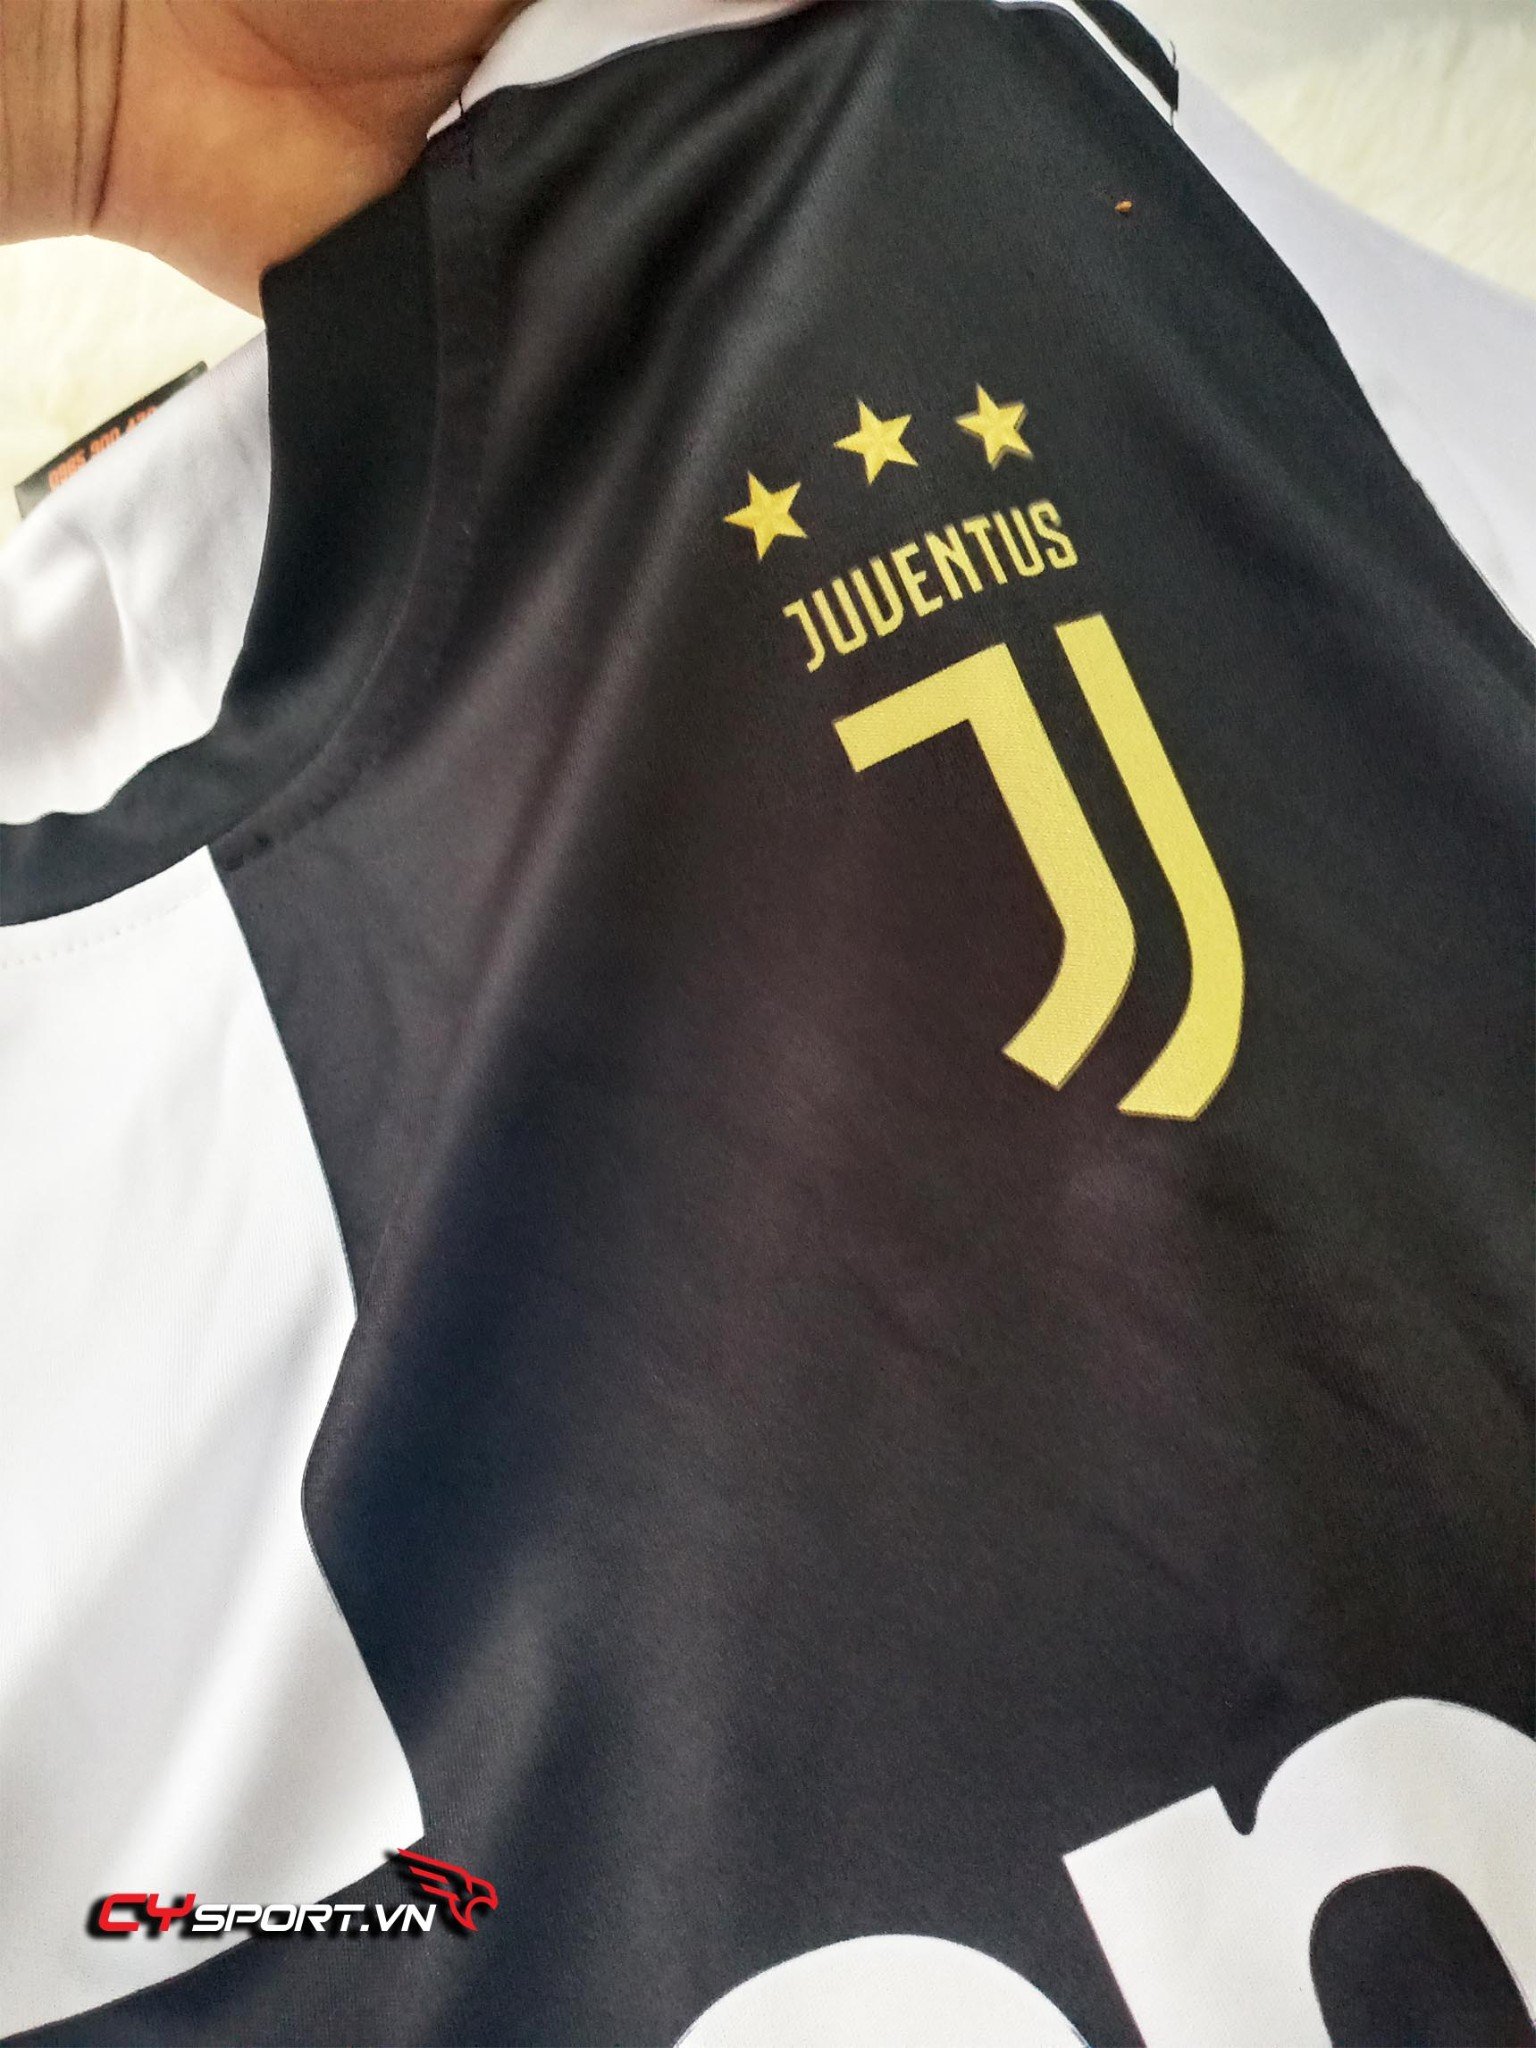 Mẫu Áo Bóng Đá Thiết Kế Dành Cho Fan Juventus – Đồng Phục Thể Thao Thiết Kế